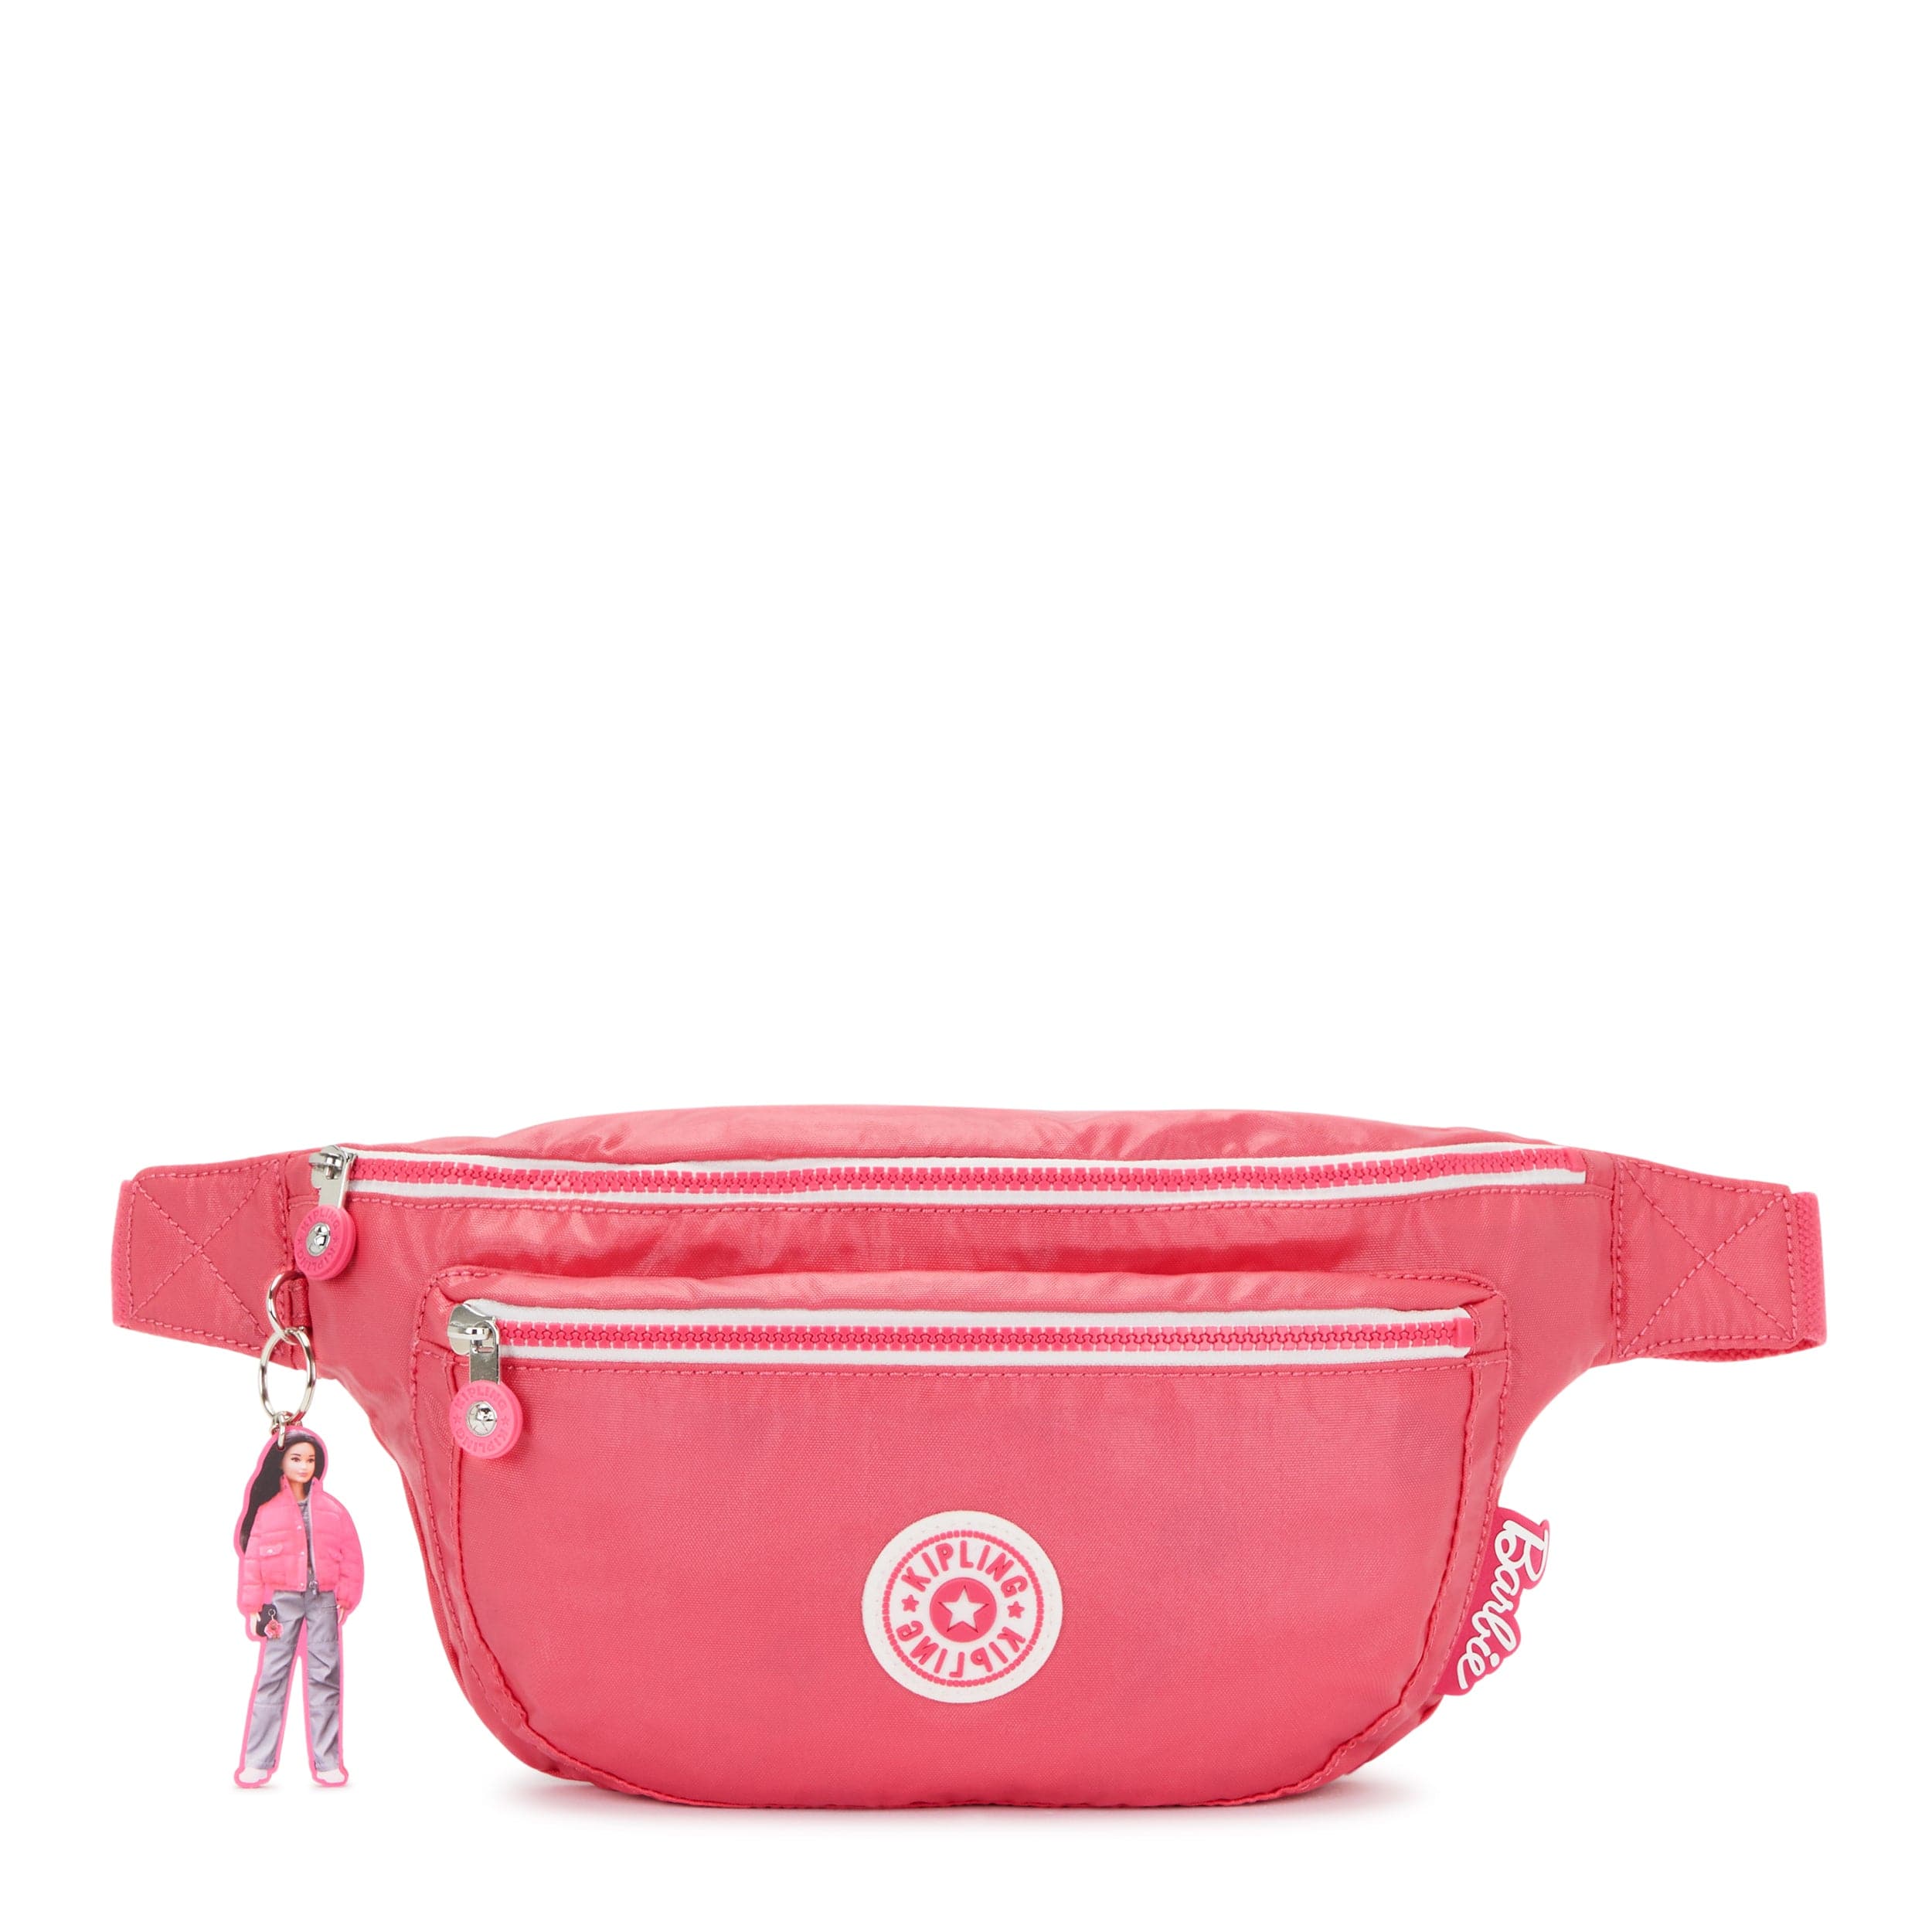 KIPLING-Yasemina Xl-Large Waistbag-Lively Pink-I7625-B1R